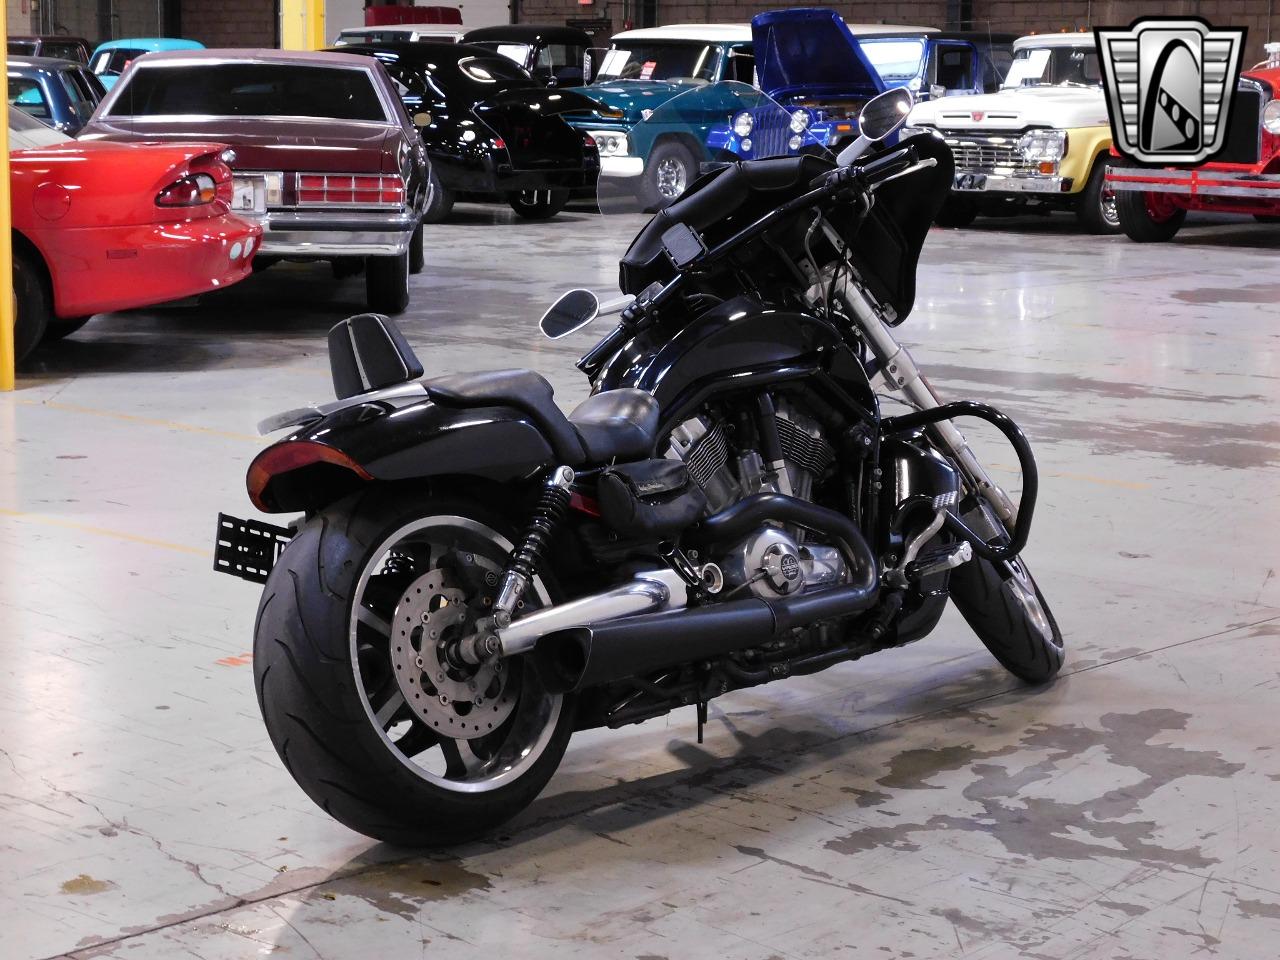 2012 Harley Davidson V-Rod Muscle